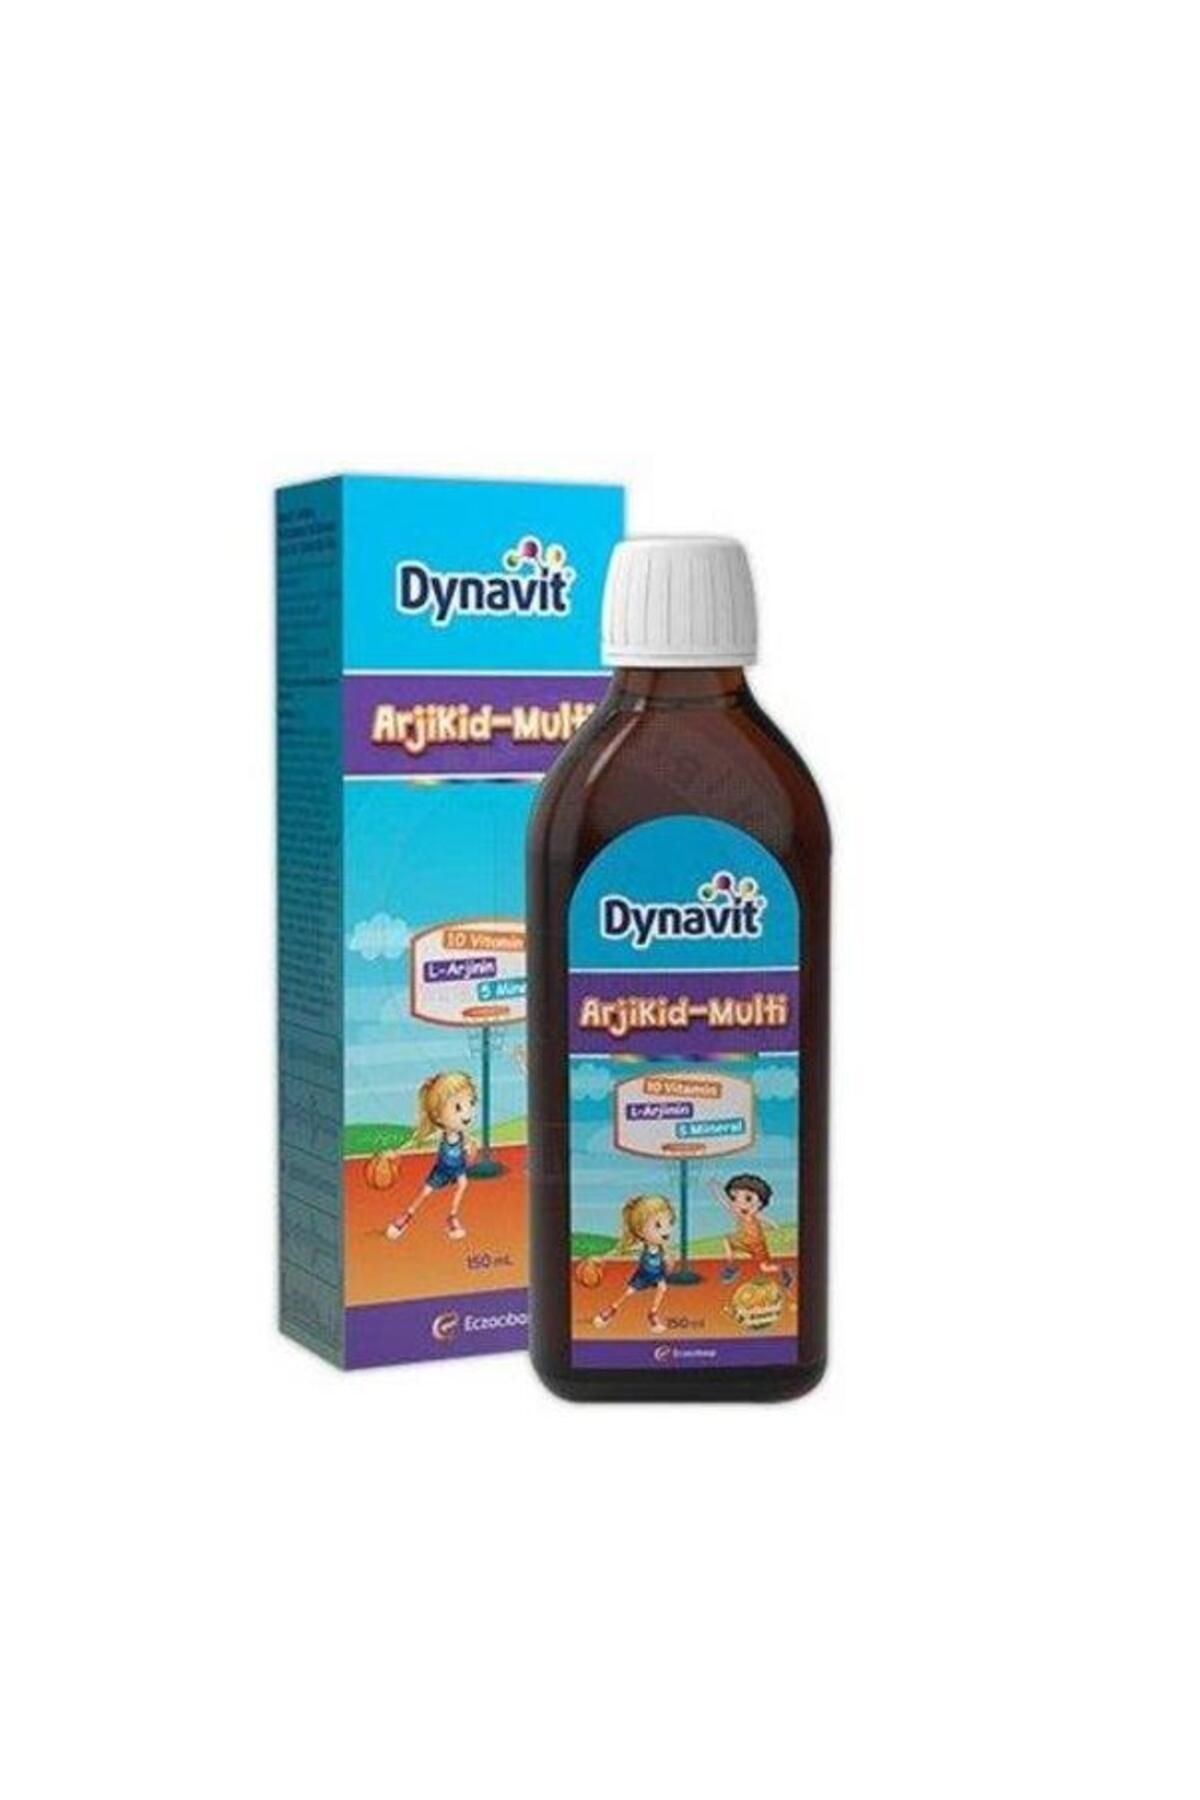 Eczacıbaşı Dynavit Arjikid Multi Sıvı Takviye Edici Gıda 150ml